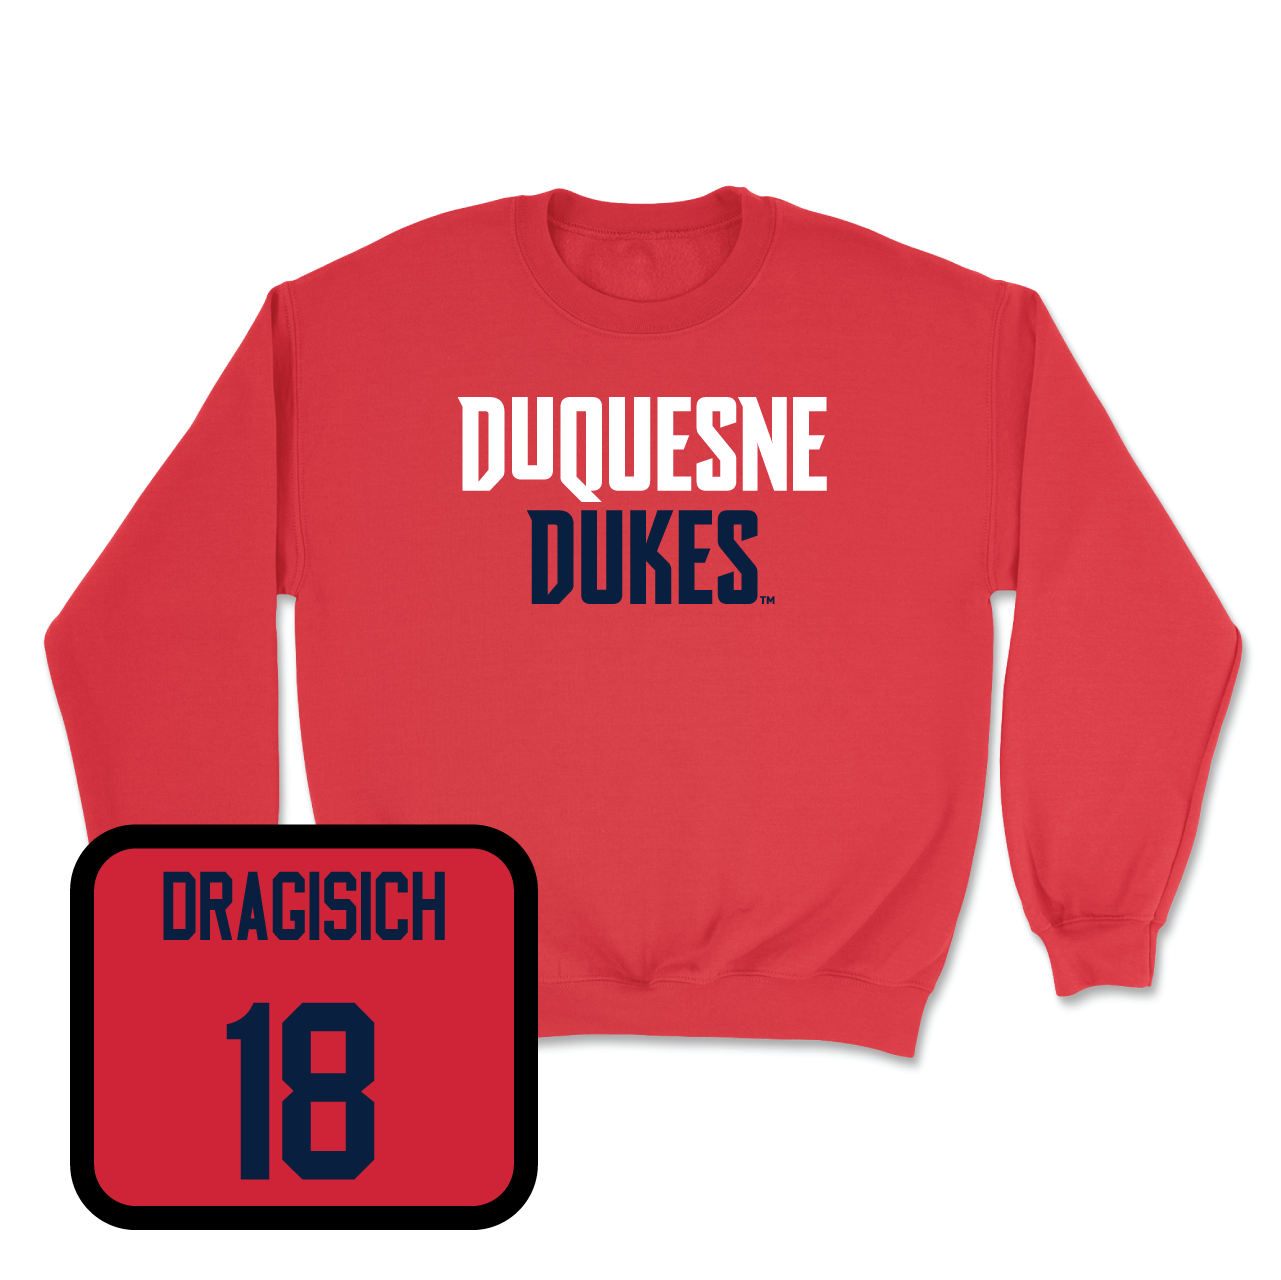 Duquesne Men's Soccer Red Dukes Crew